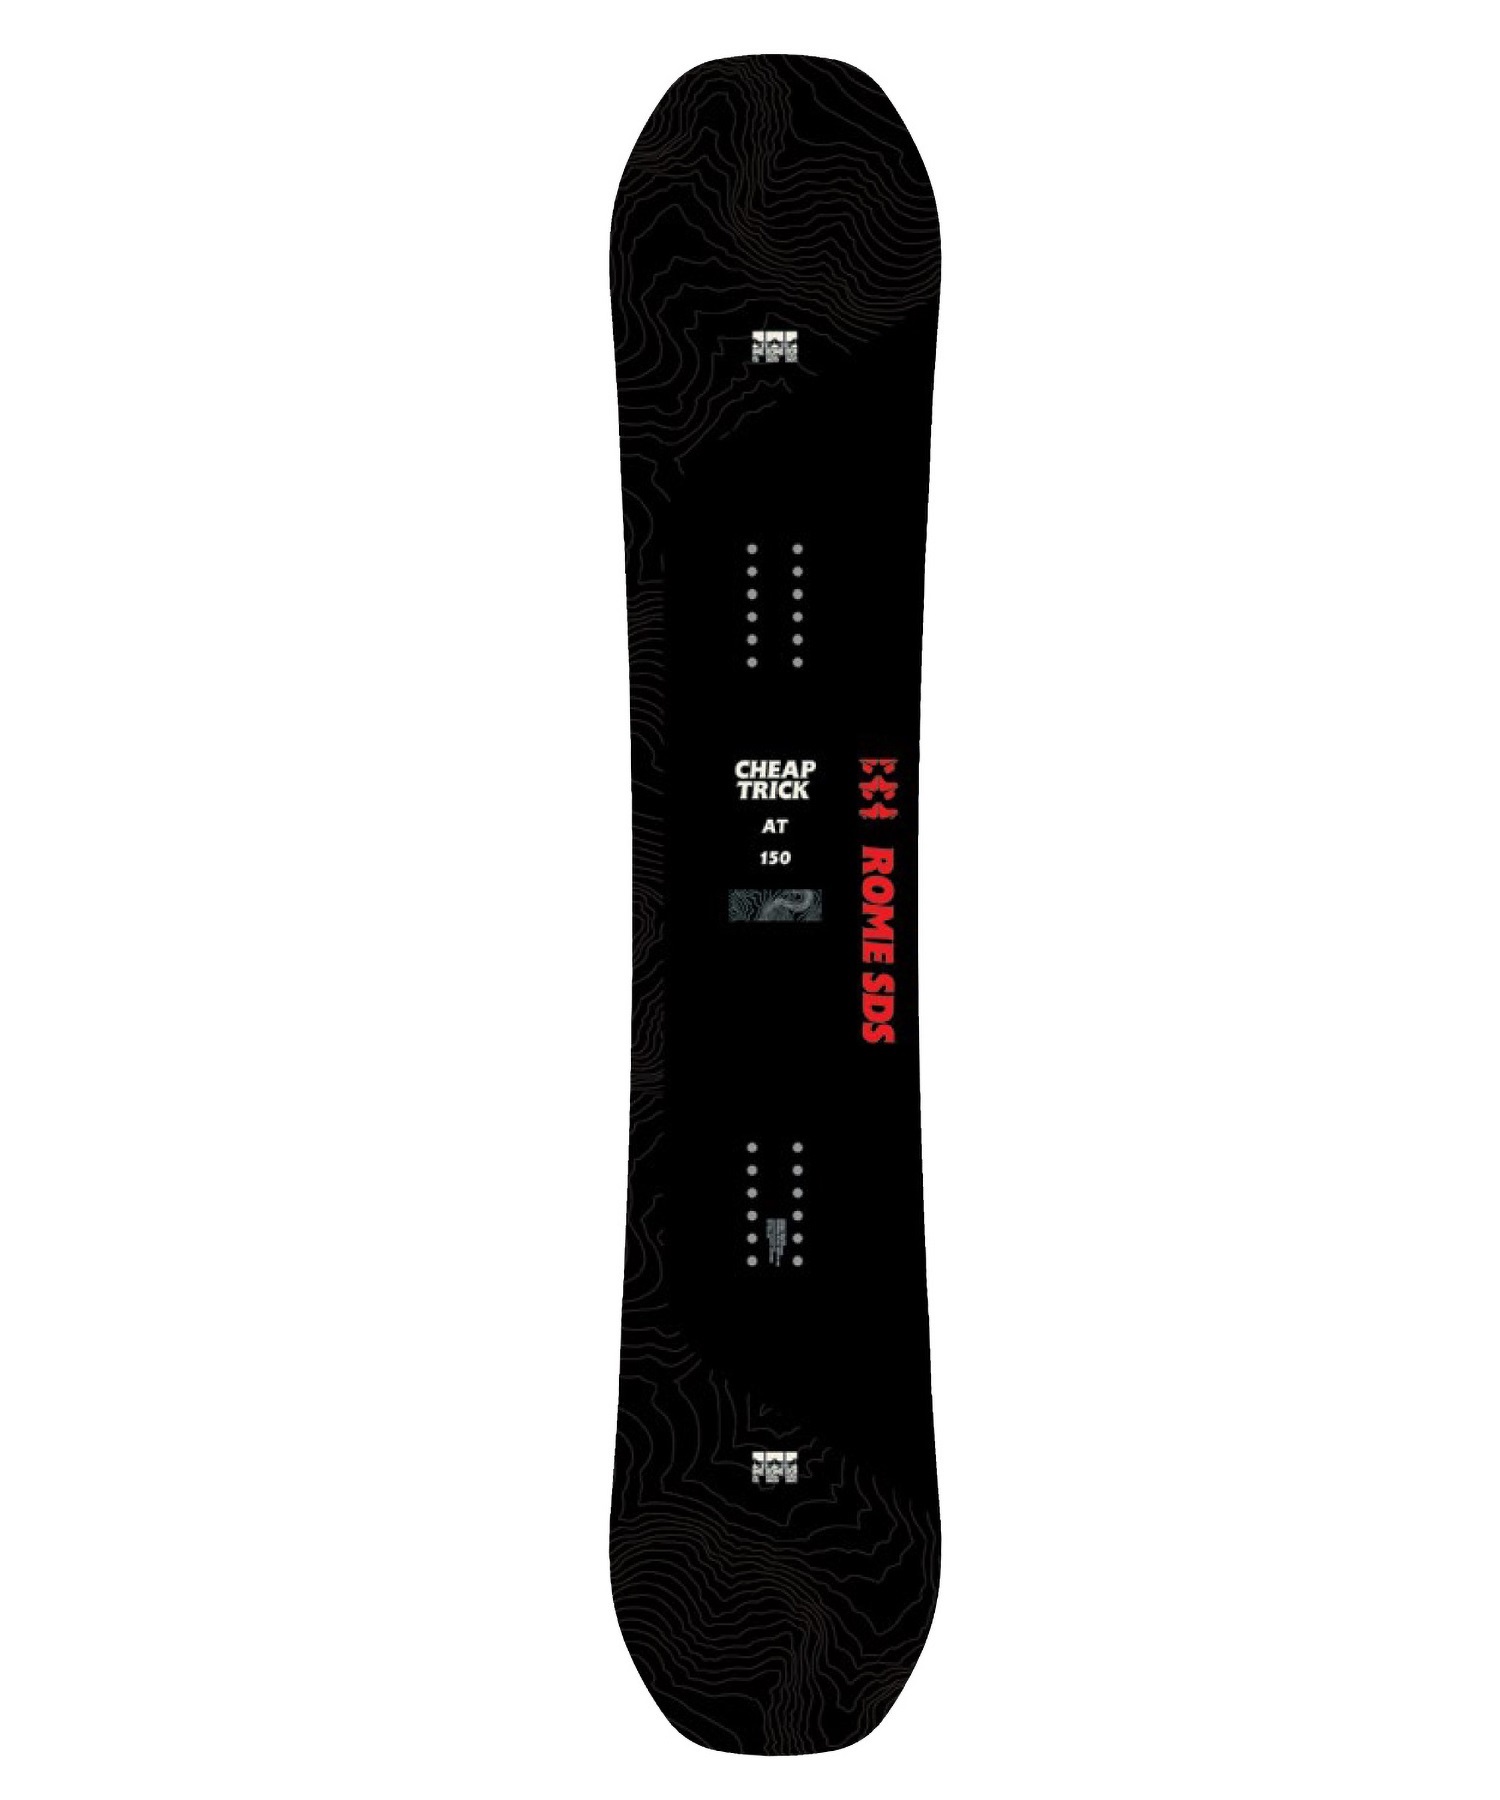 スノーボード 板 メンズ ROME SDS ローム CHEAPTRICK-AT 23-24モデル